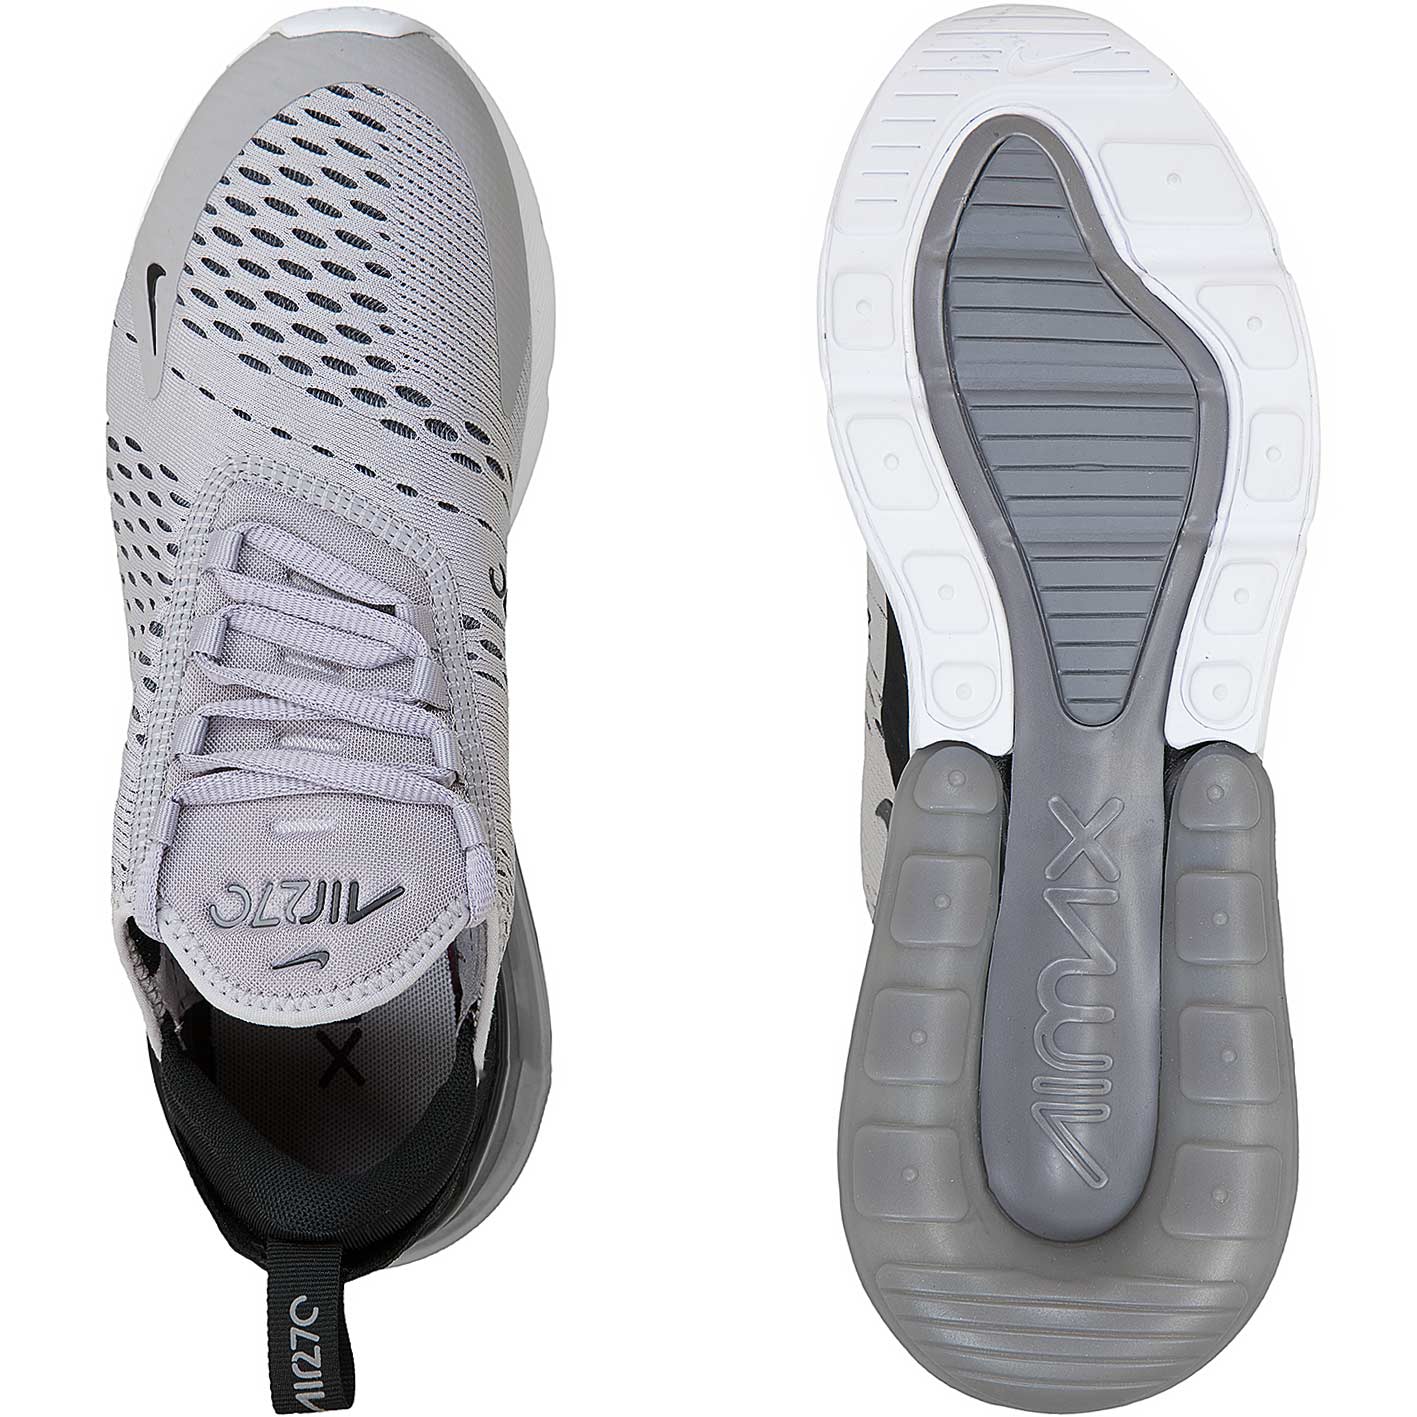 ☆ Nike Damen Air Max 270 grau/weiß - hier